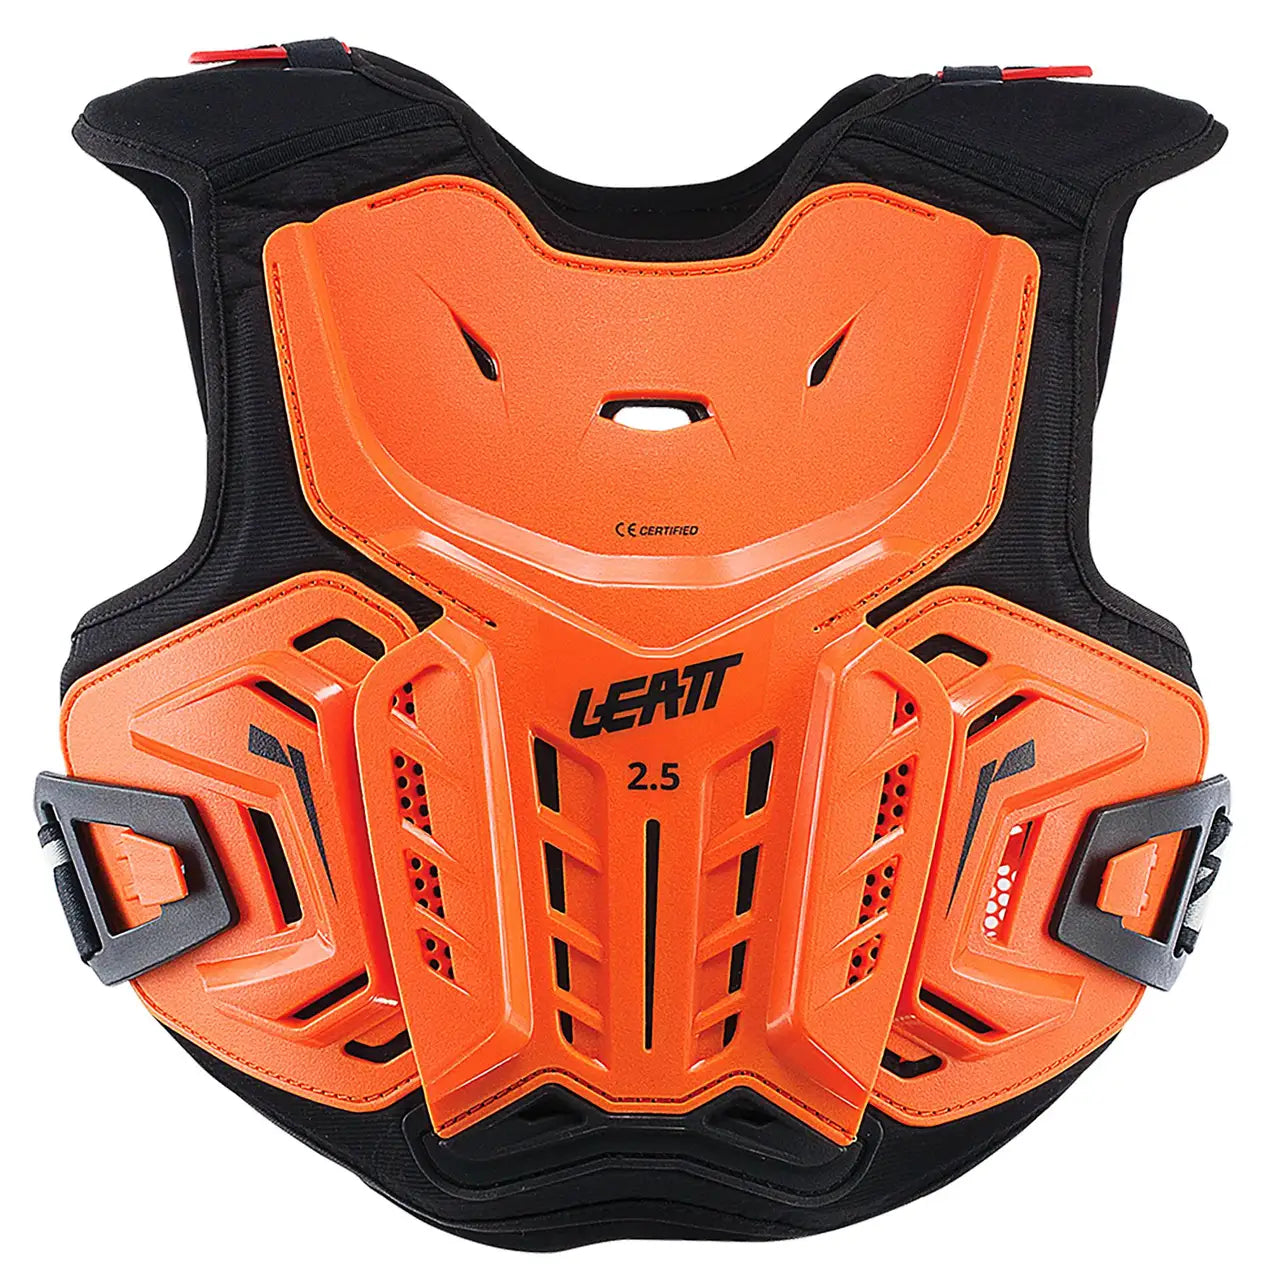 Leatt Chest Protector 2.5 JUNIOR Orange/Black